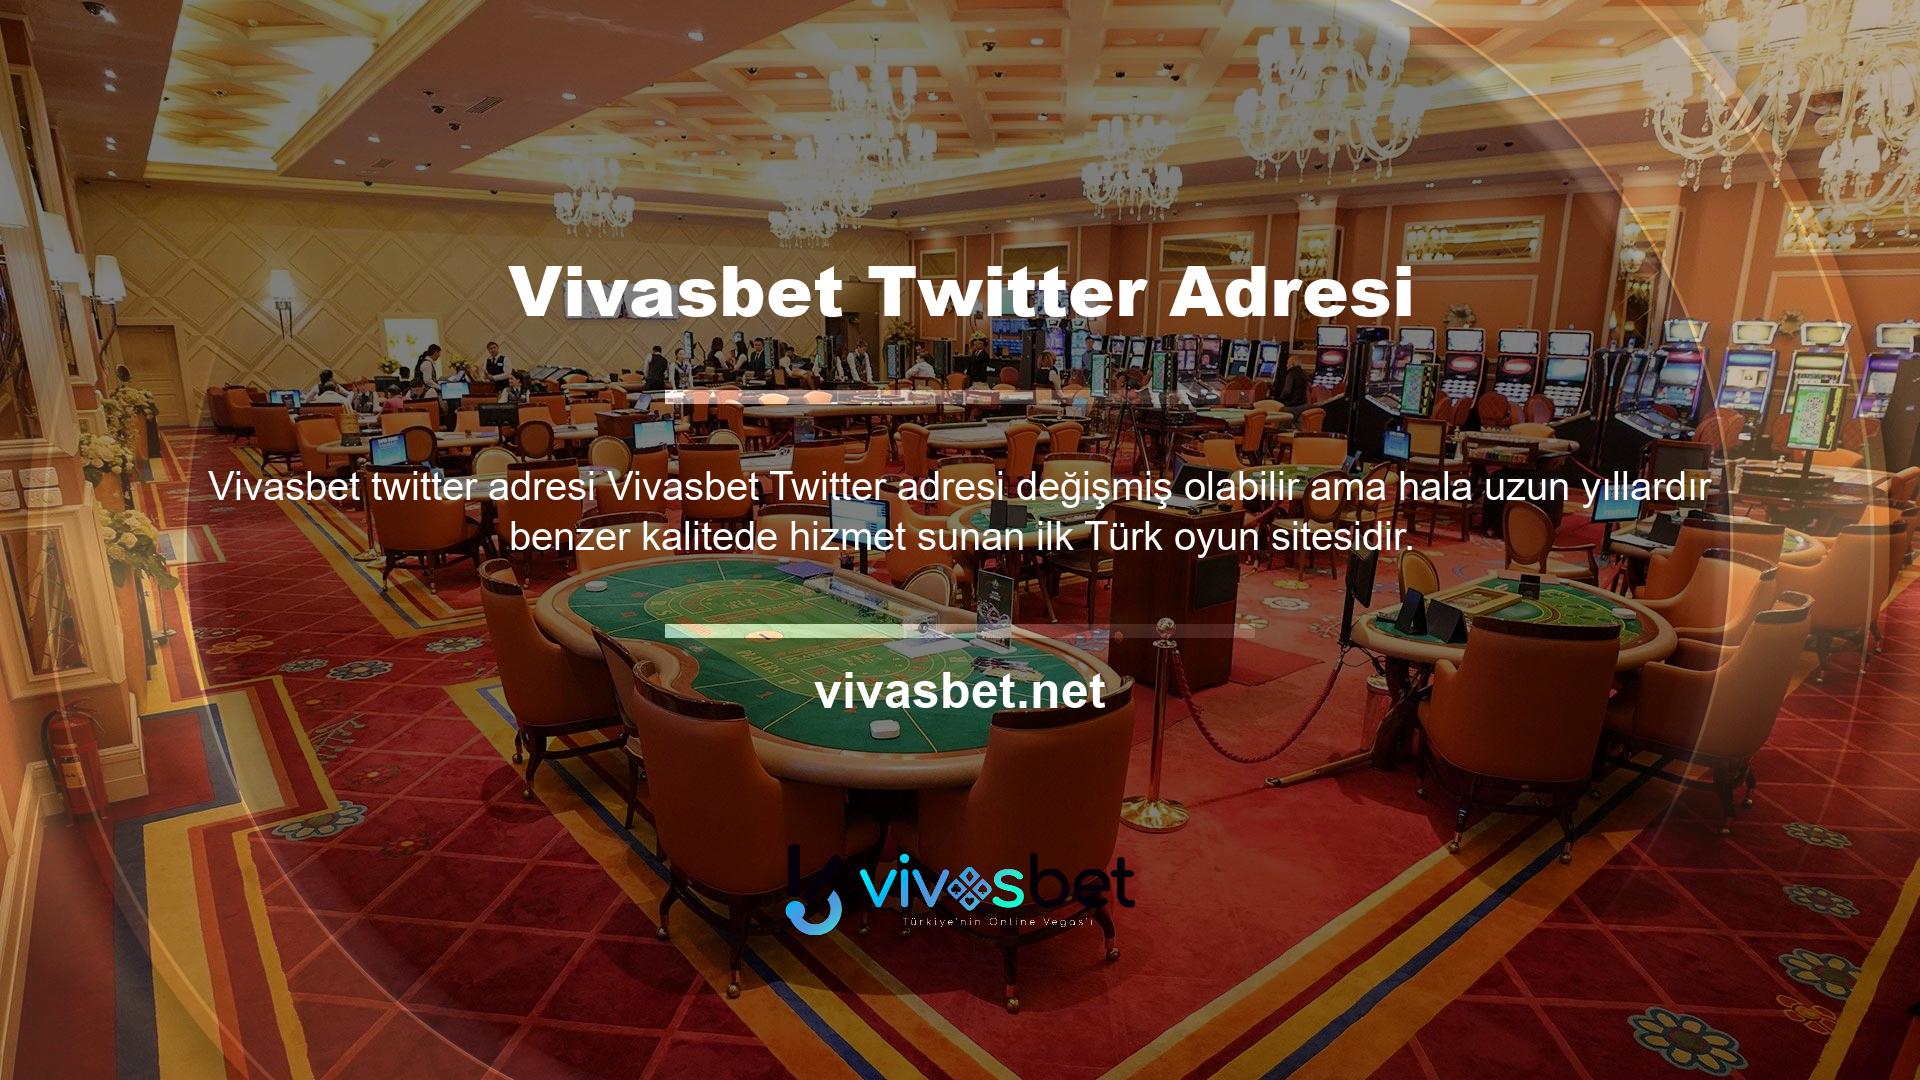 Ofisinizin rahatlığında Vivasbet Twitter'a para yatırmak ve çekmek güvenli ve güvenilir bir uygulamadır